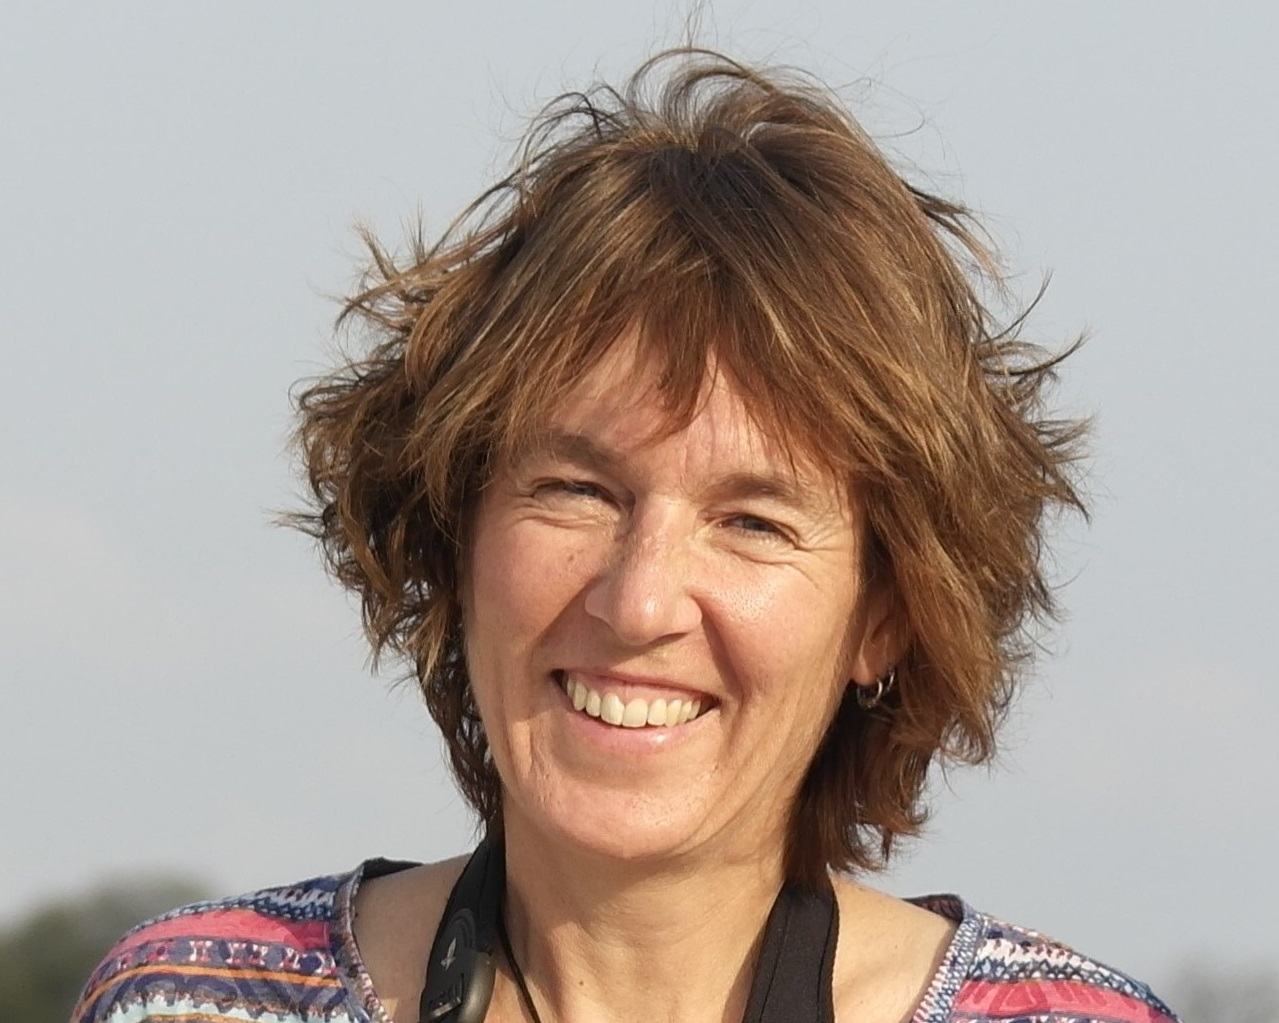 Dr. Bettina Wachter